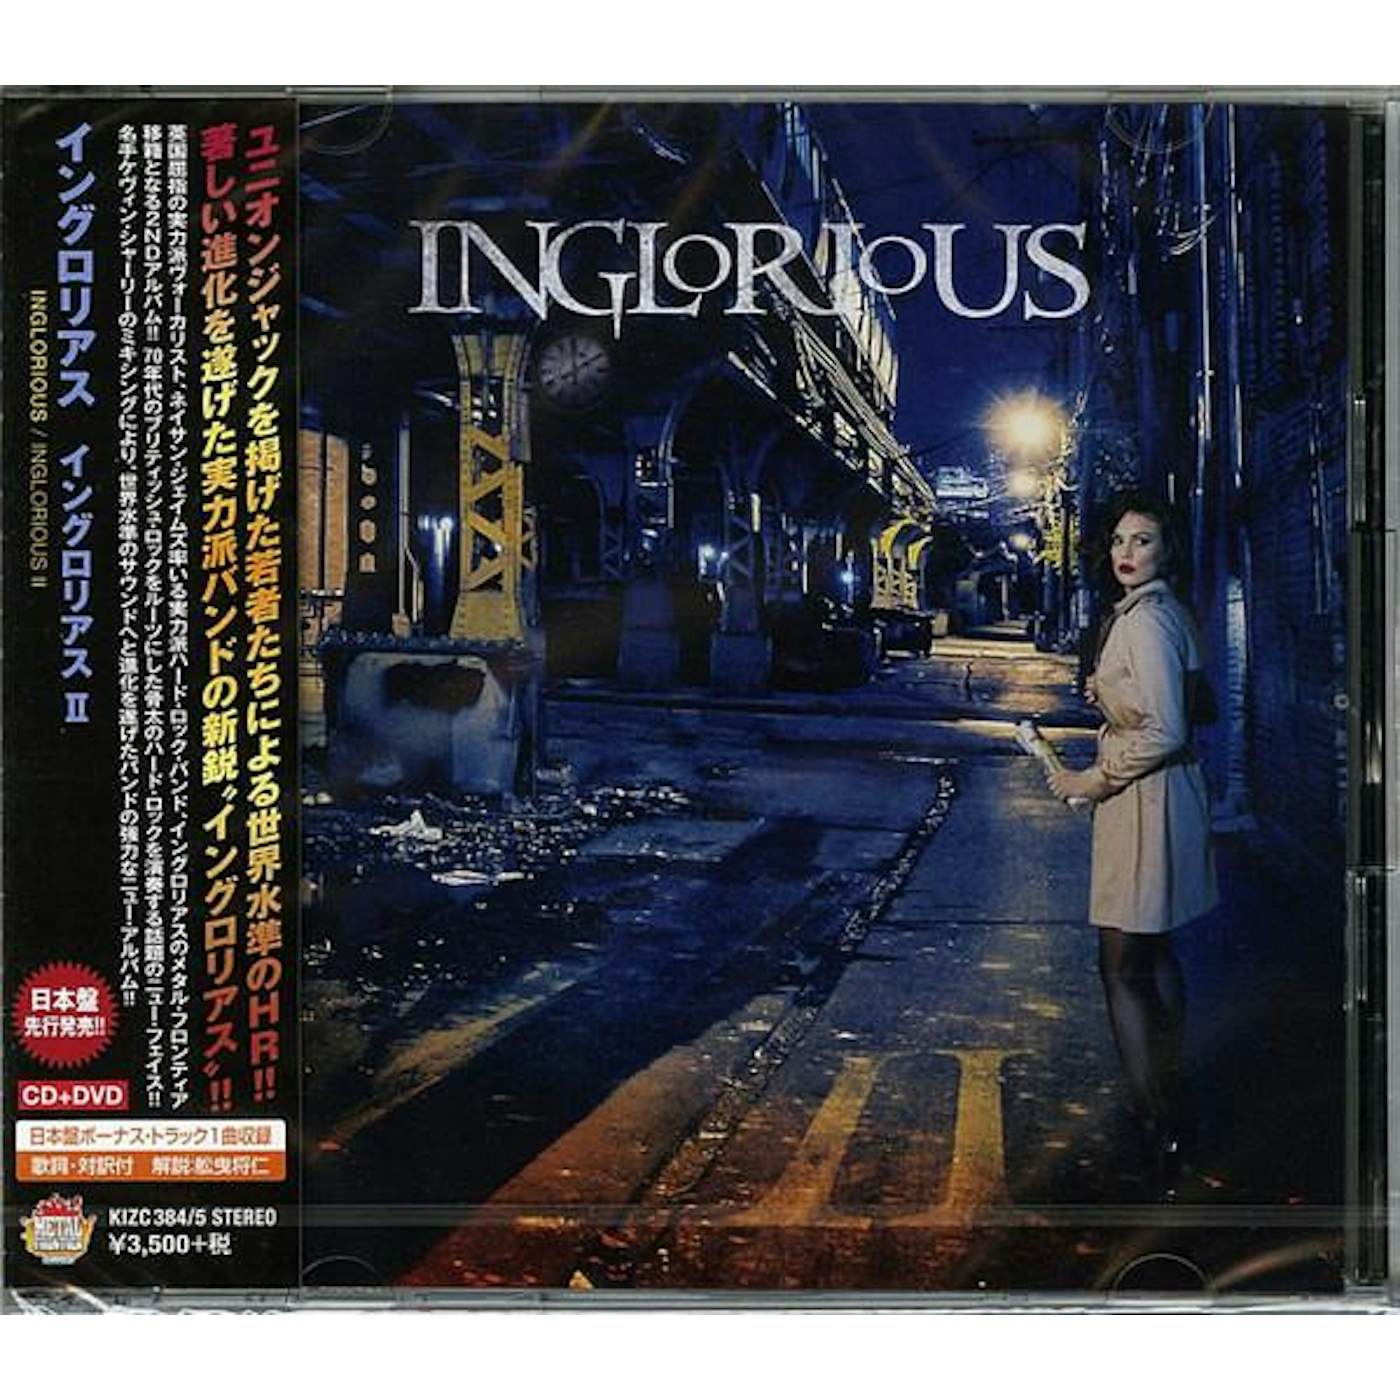 Inglorious INGLORIUS 2 (CD/DVD) CD